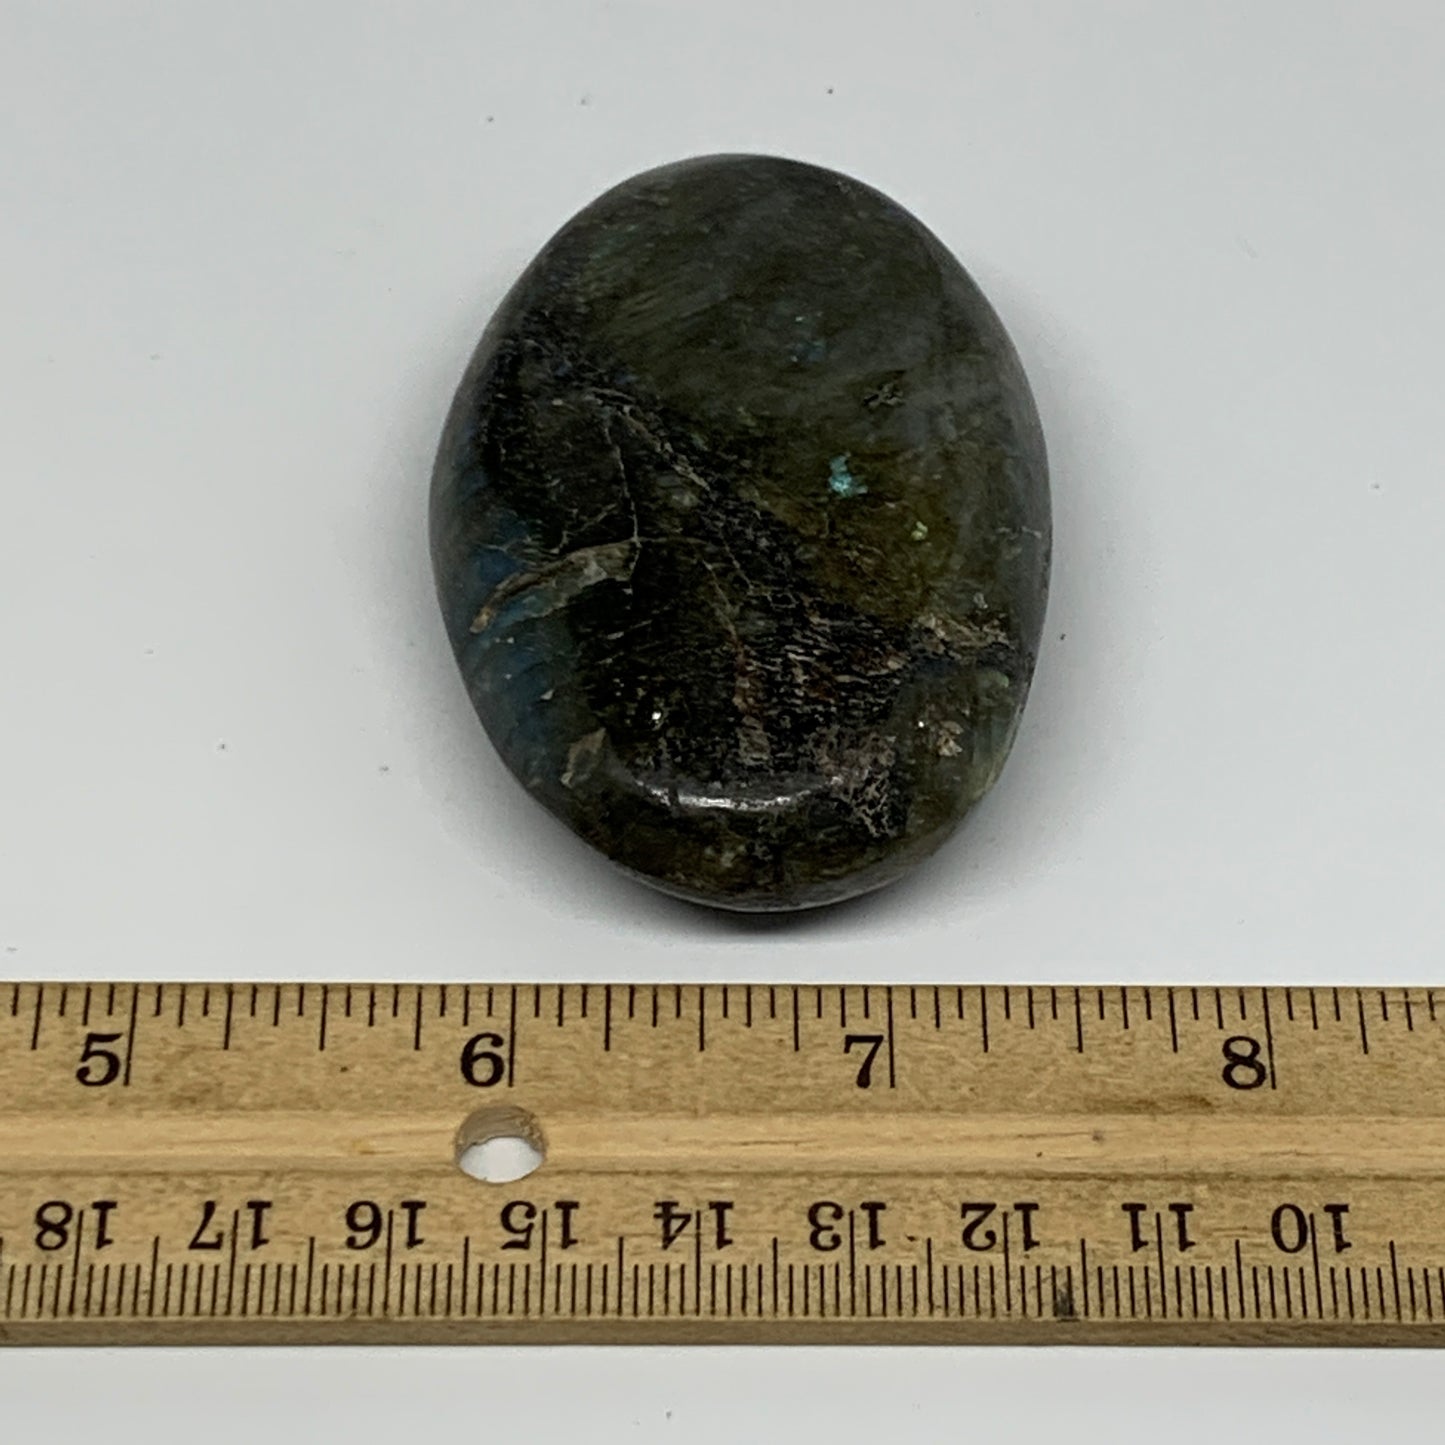 93.8g,2.6"x1.8"x0.8", Labradorite Palm-stone Polished Reiki @Madagascar,B17789